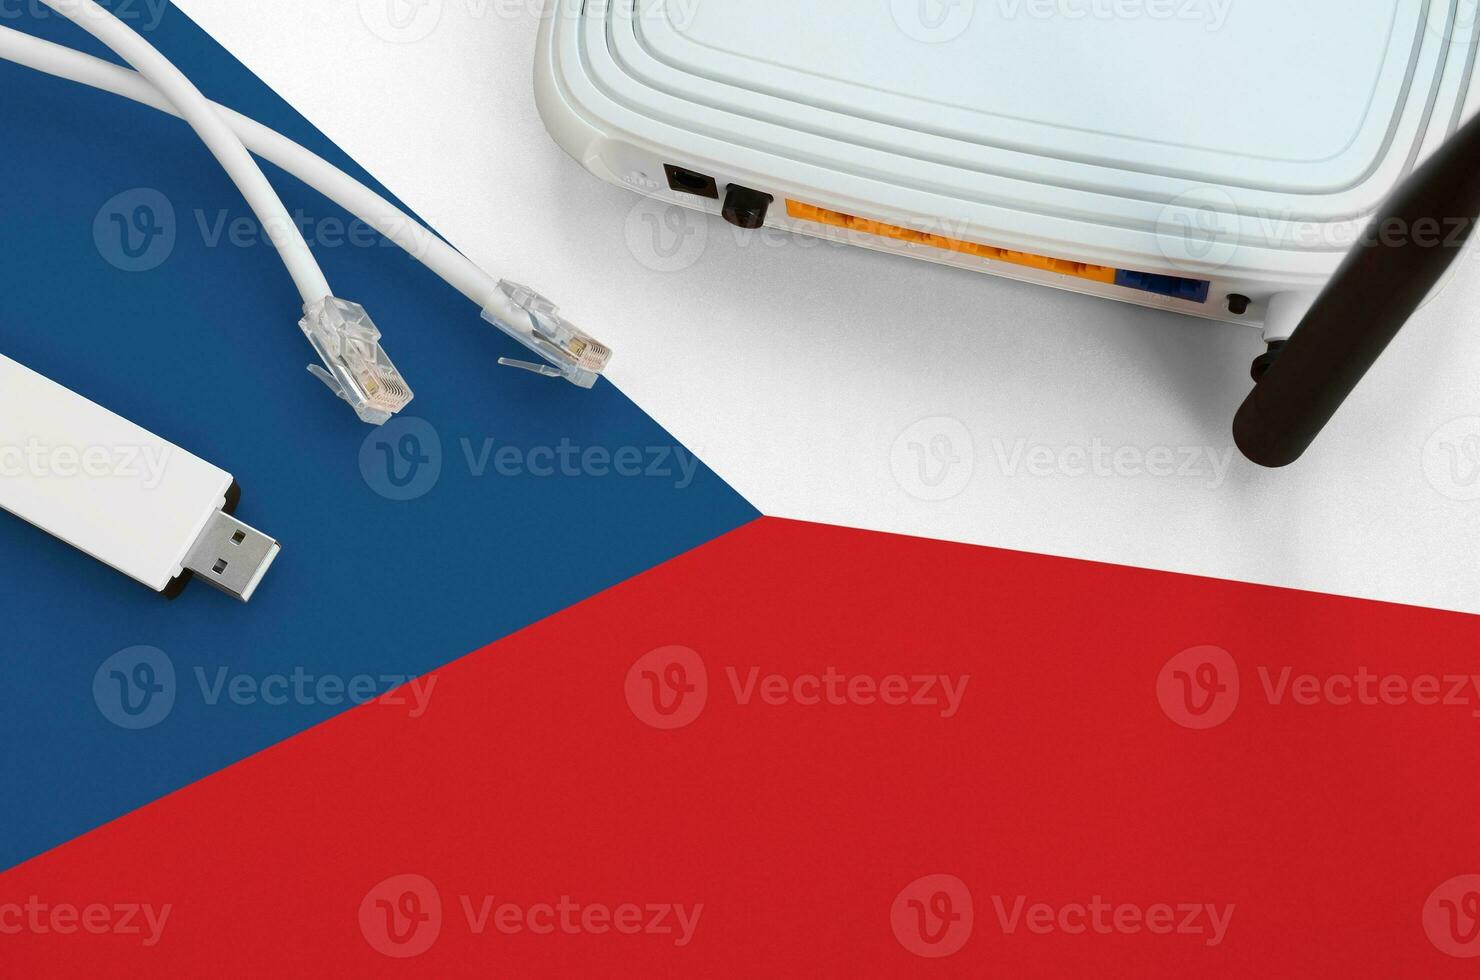 Tsjechisch vlag afgebeeld Aan tafel met internet rj45 kabel, draadloze USB Wifi adapter en router. internet verbinding concept foto